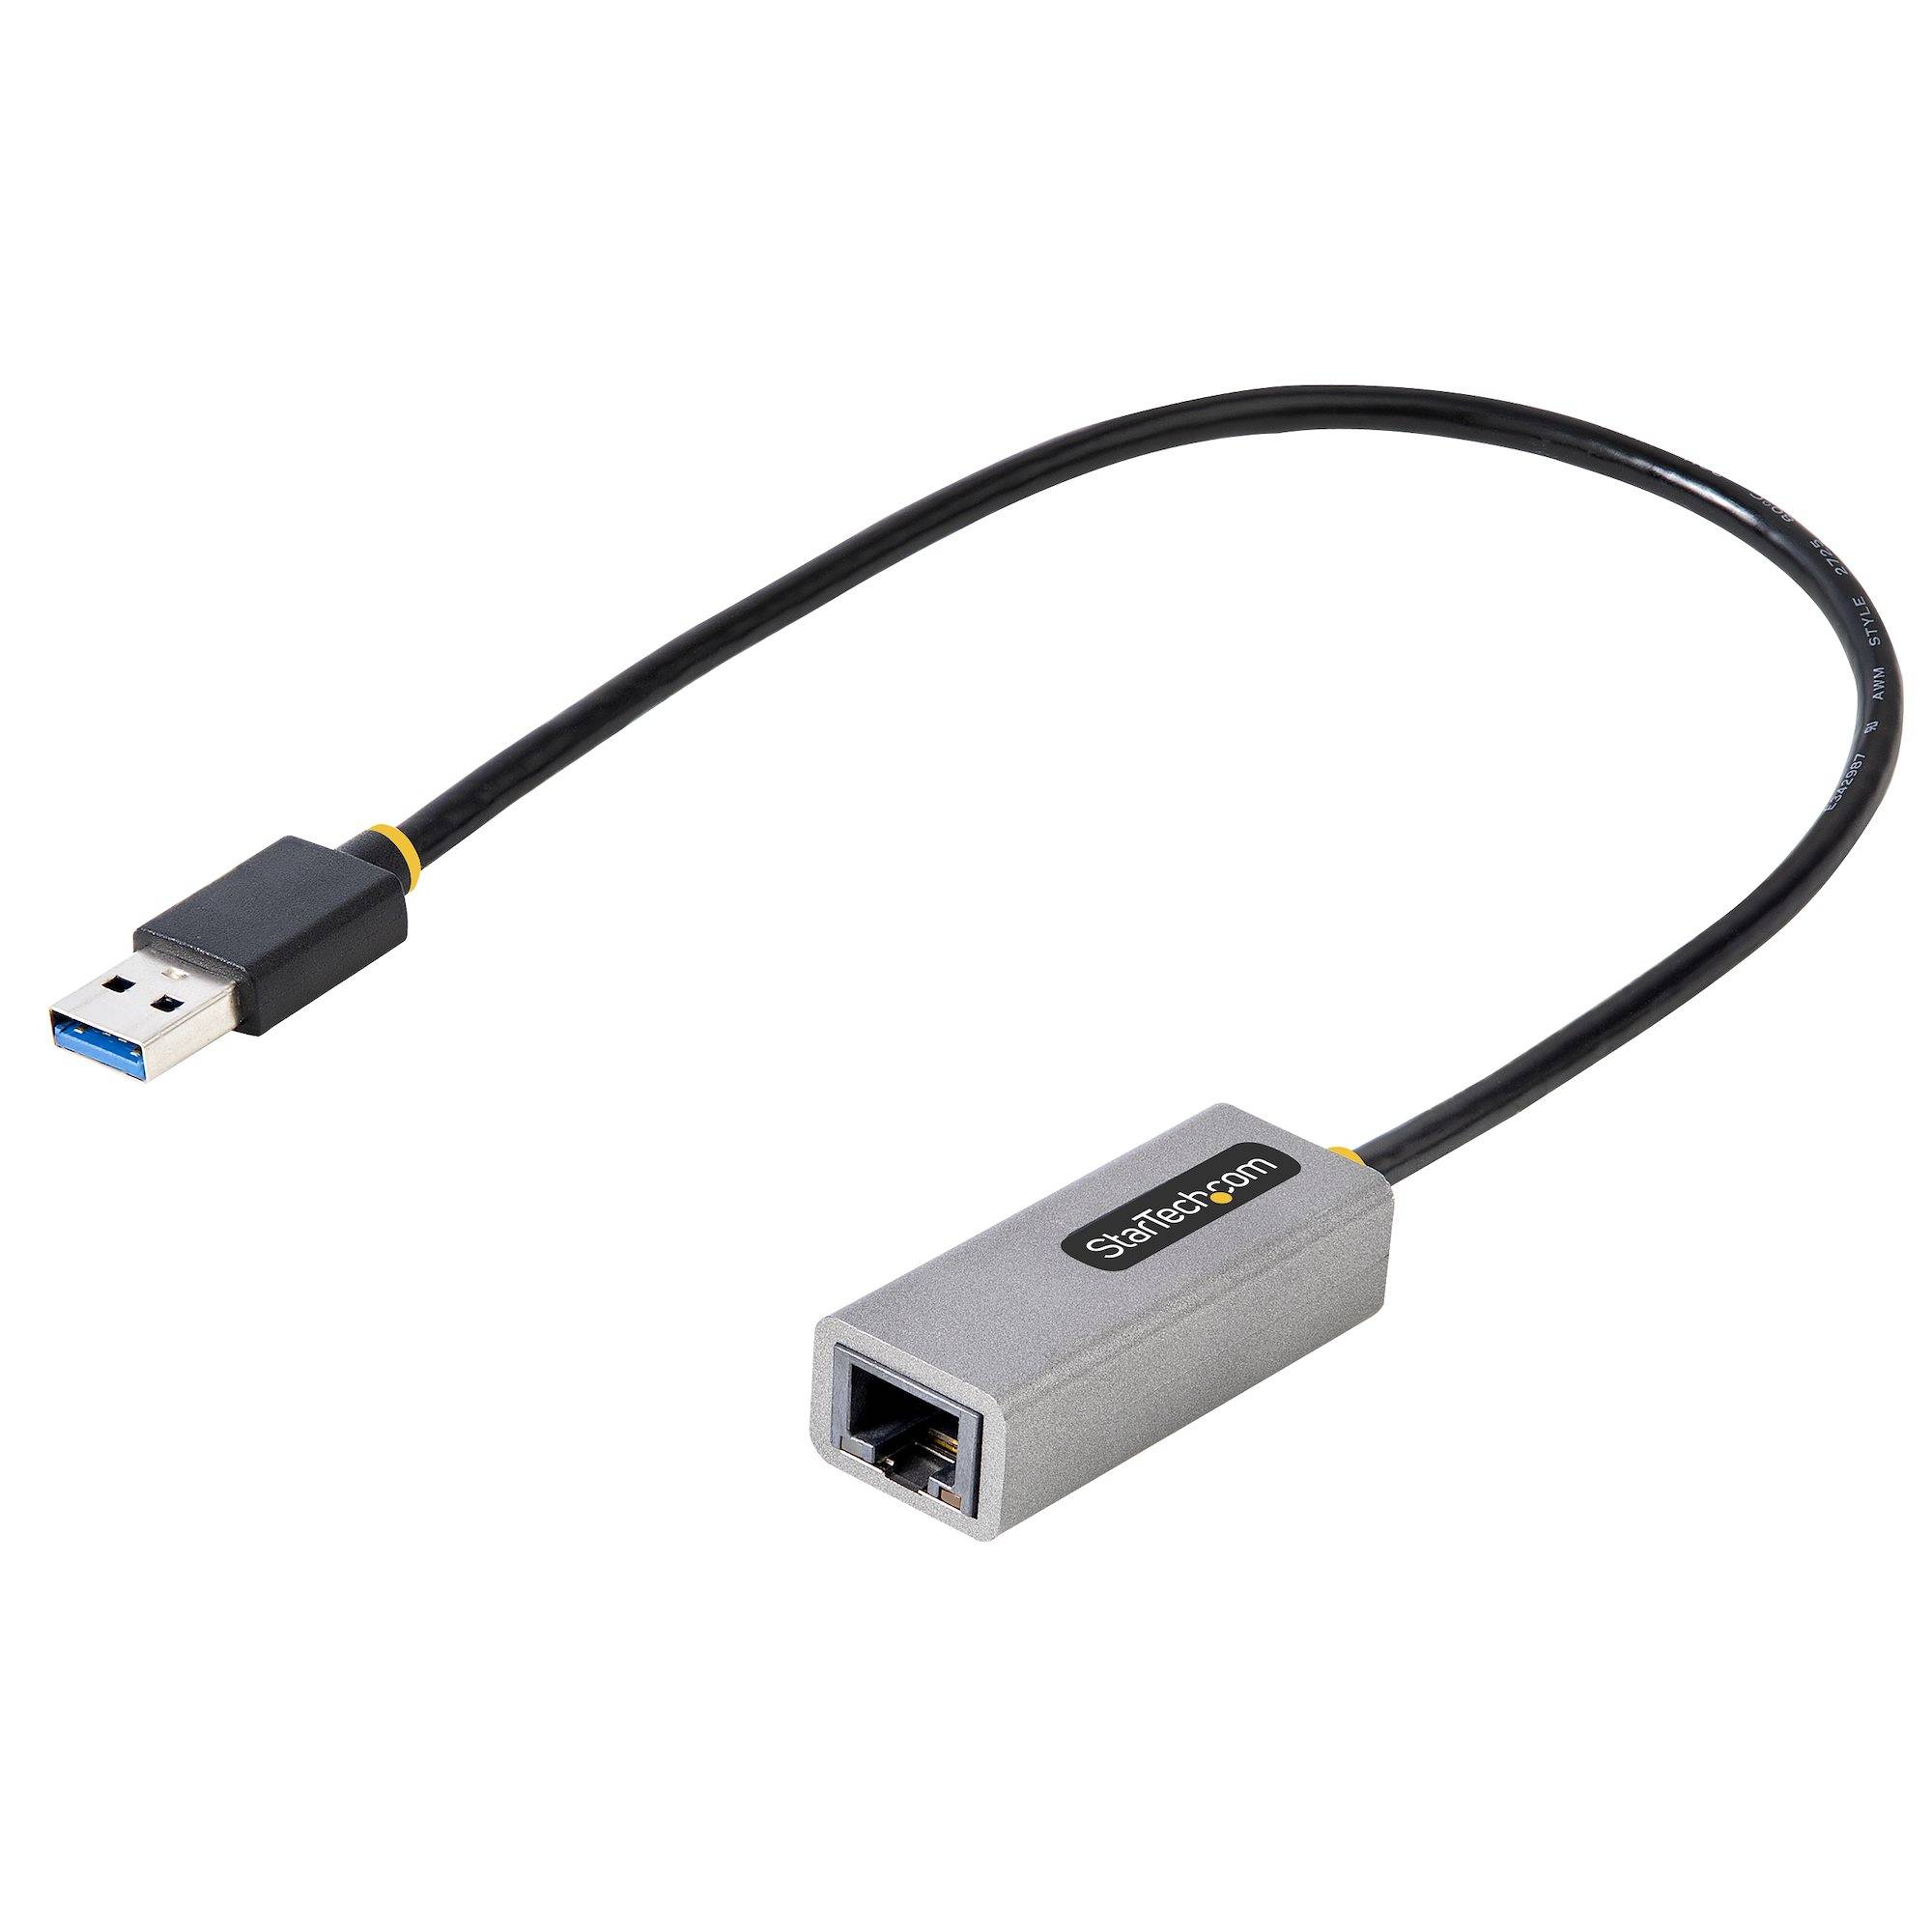 Rca Informatique - Image du produit : ADAPTATEUR ETHERNET USB 3.0 10/100/1000 GIGABIT ETHERNET